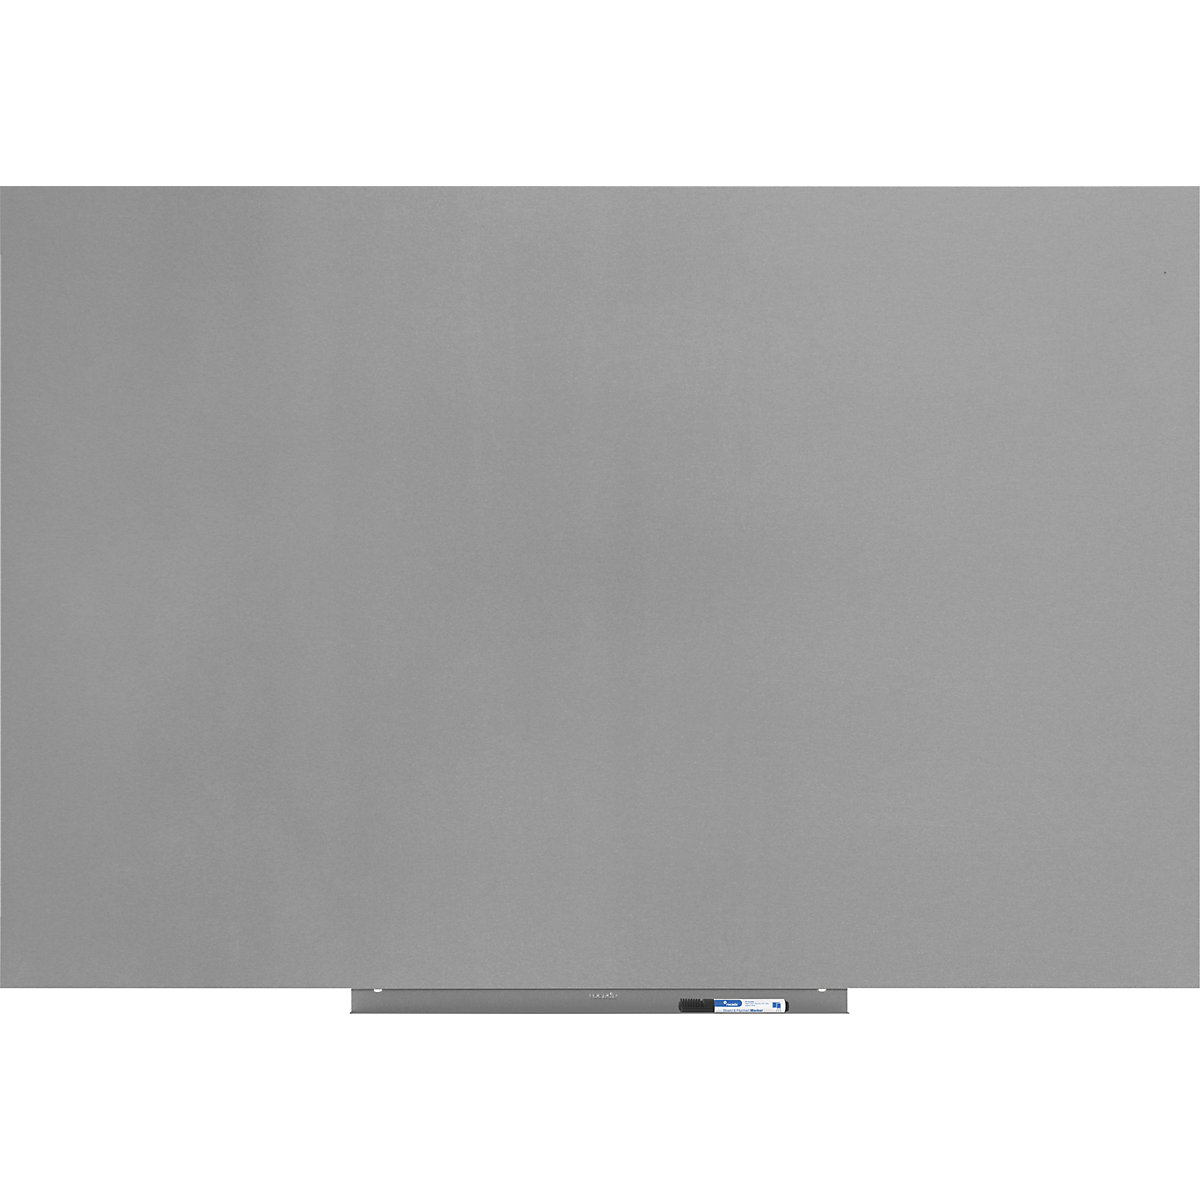 Modulo per lavagne bianche, versione PRO – lamiera d'acciaio, rivestita, largh. x alt. 1000 x 1500 mm, argento-19